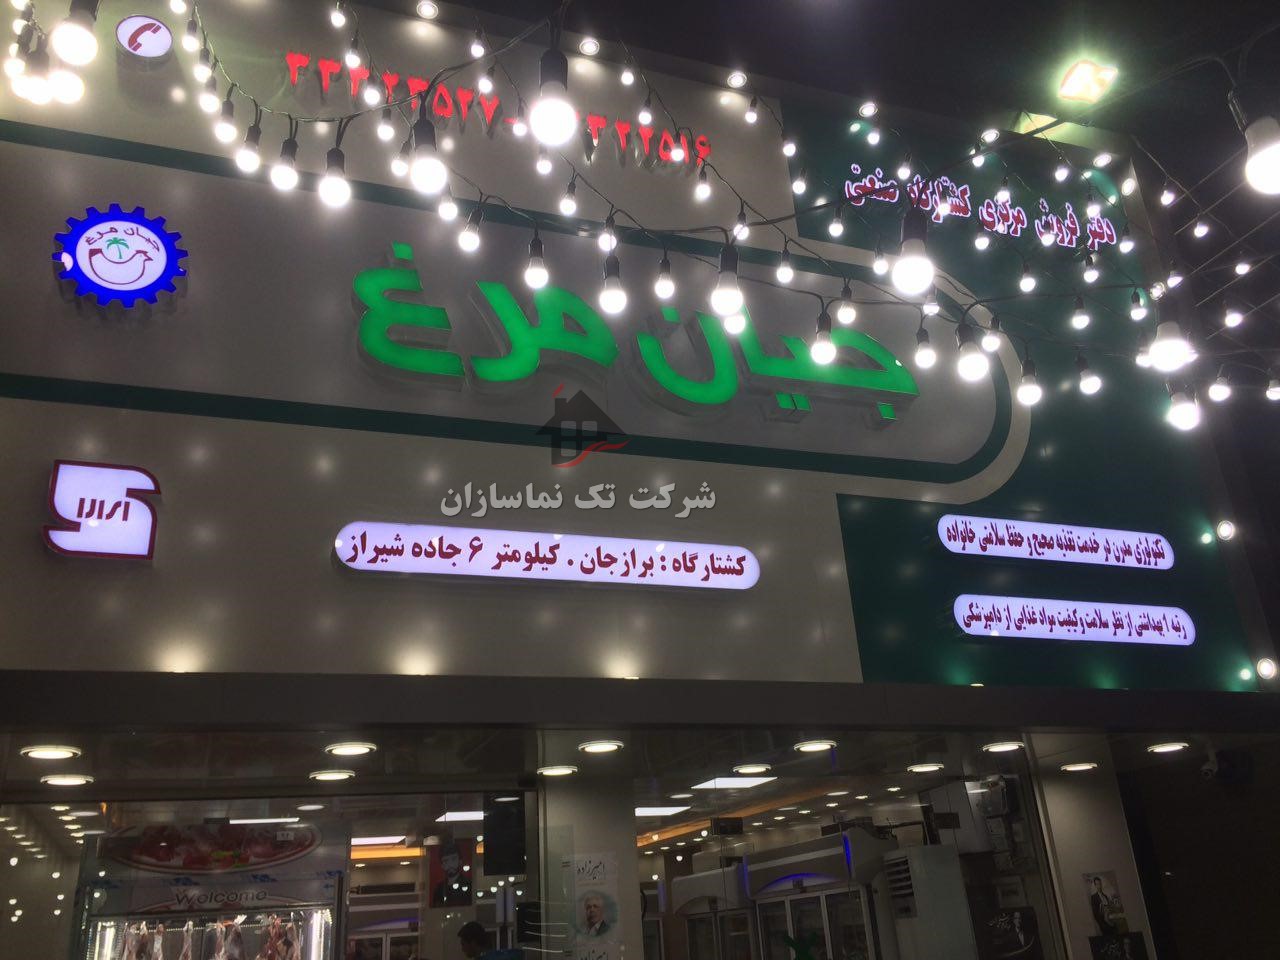  طراحی و اجرای  تابلو نمای کامپوزیت نمایندگی شرکت کشتارگاه جیان مرغ در شهرستان بوشهر